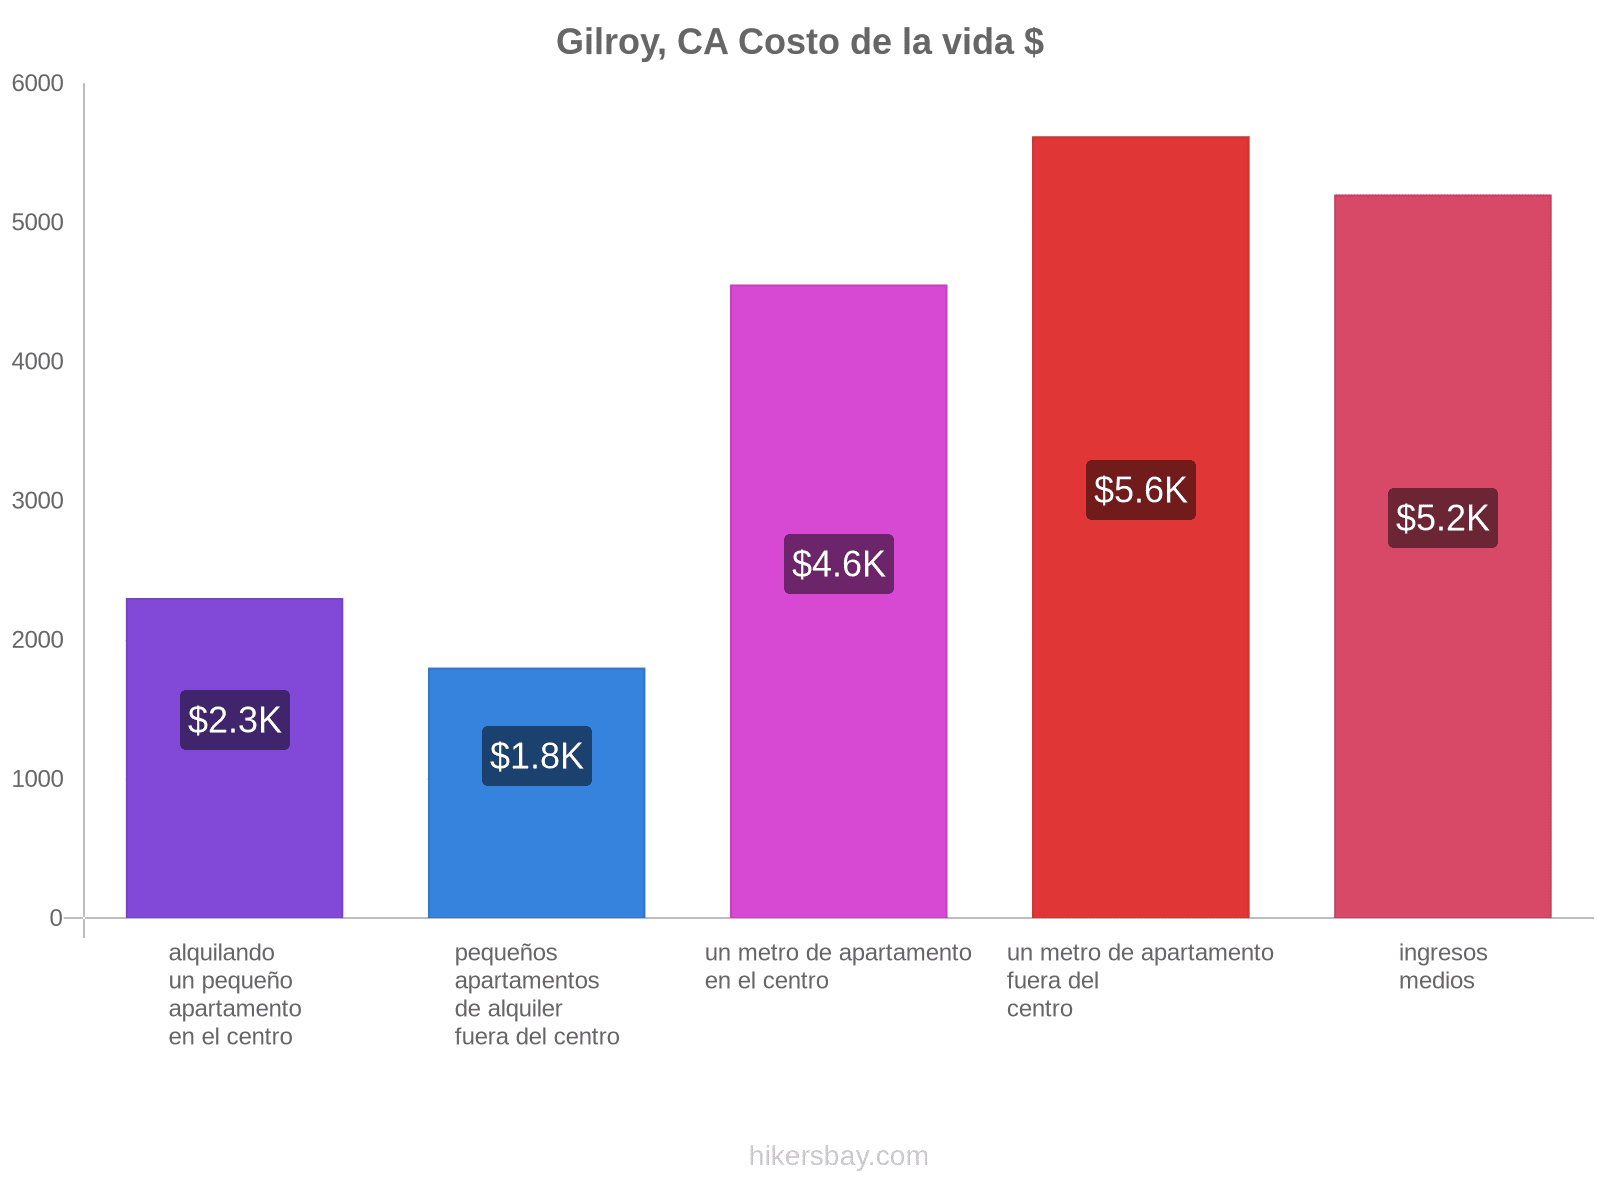 Gilroy, CA costo de la vida hikersbay.com